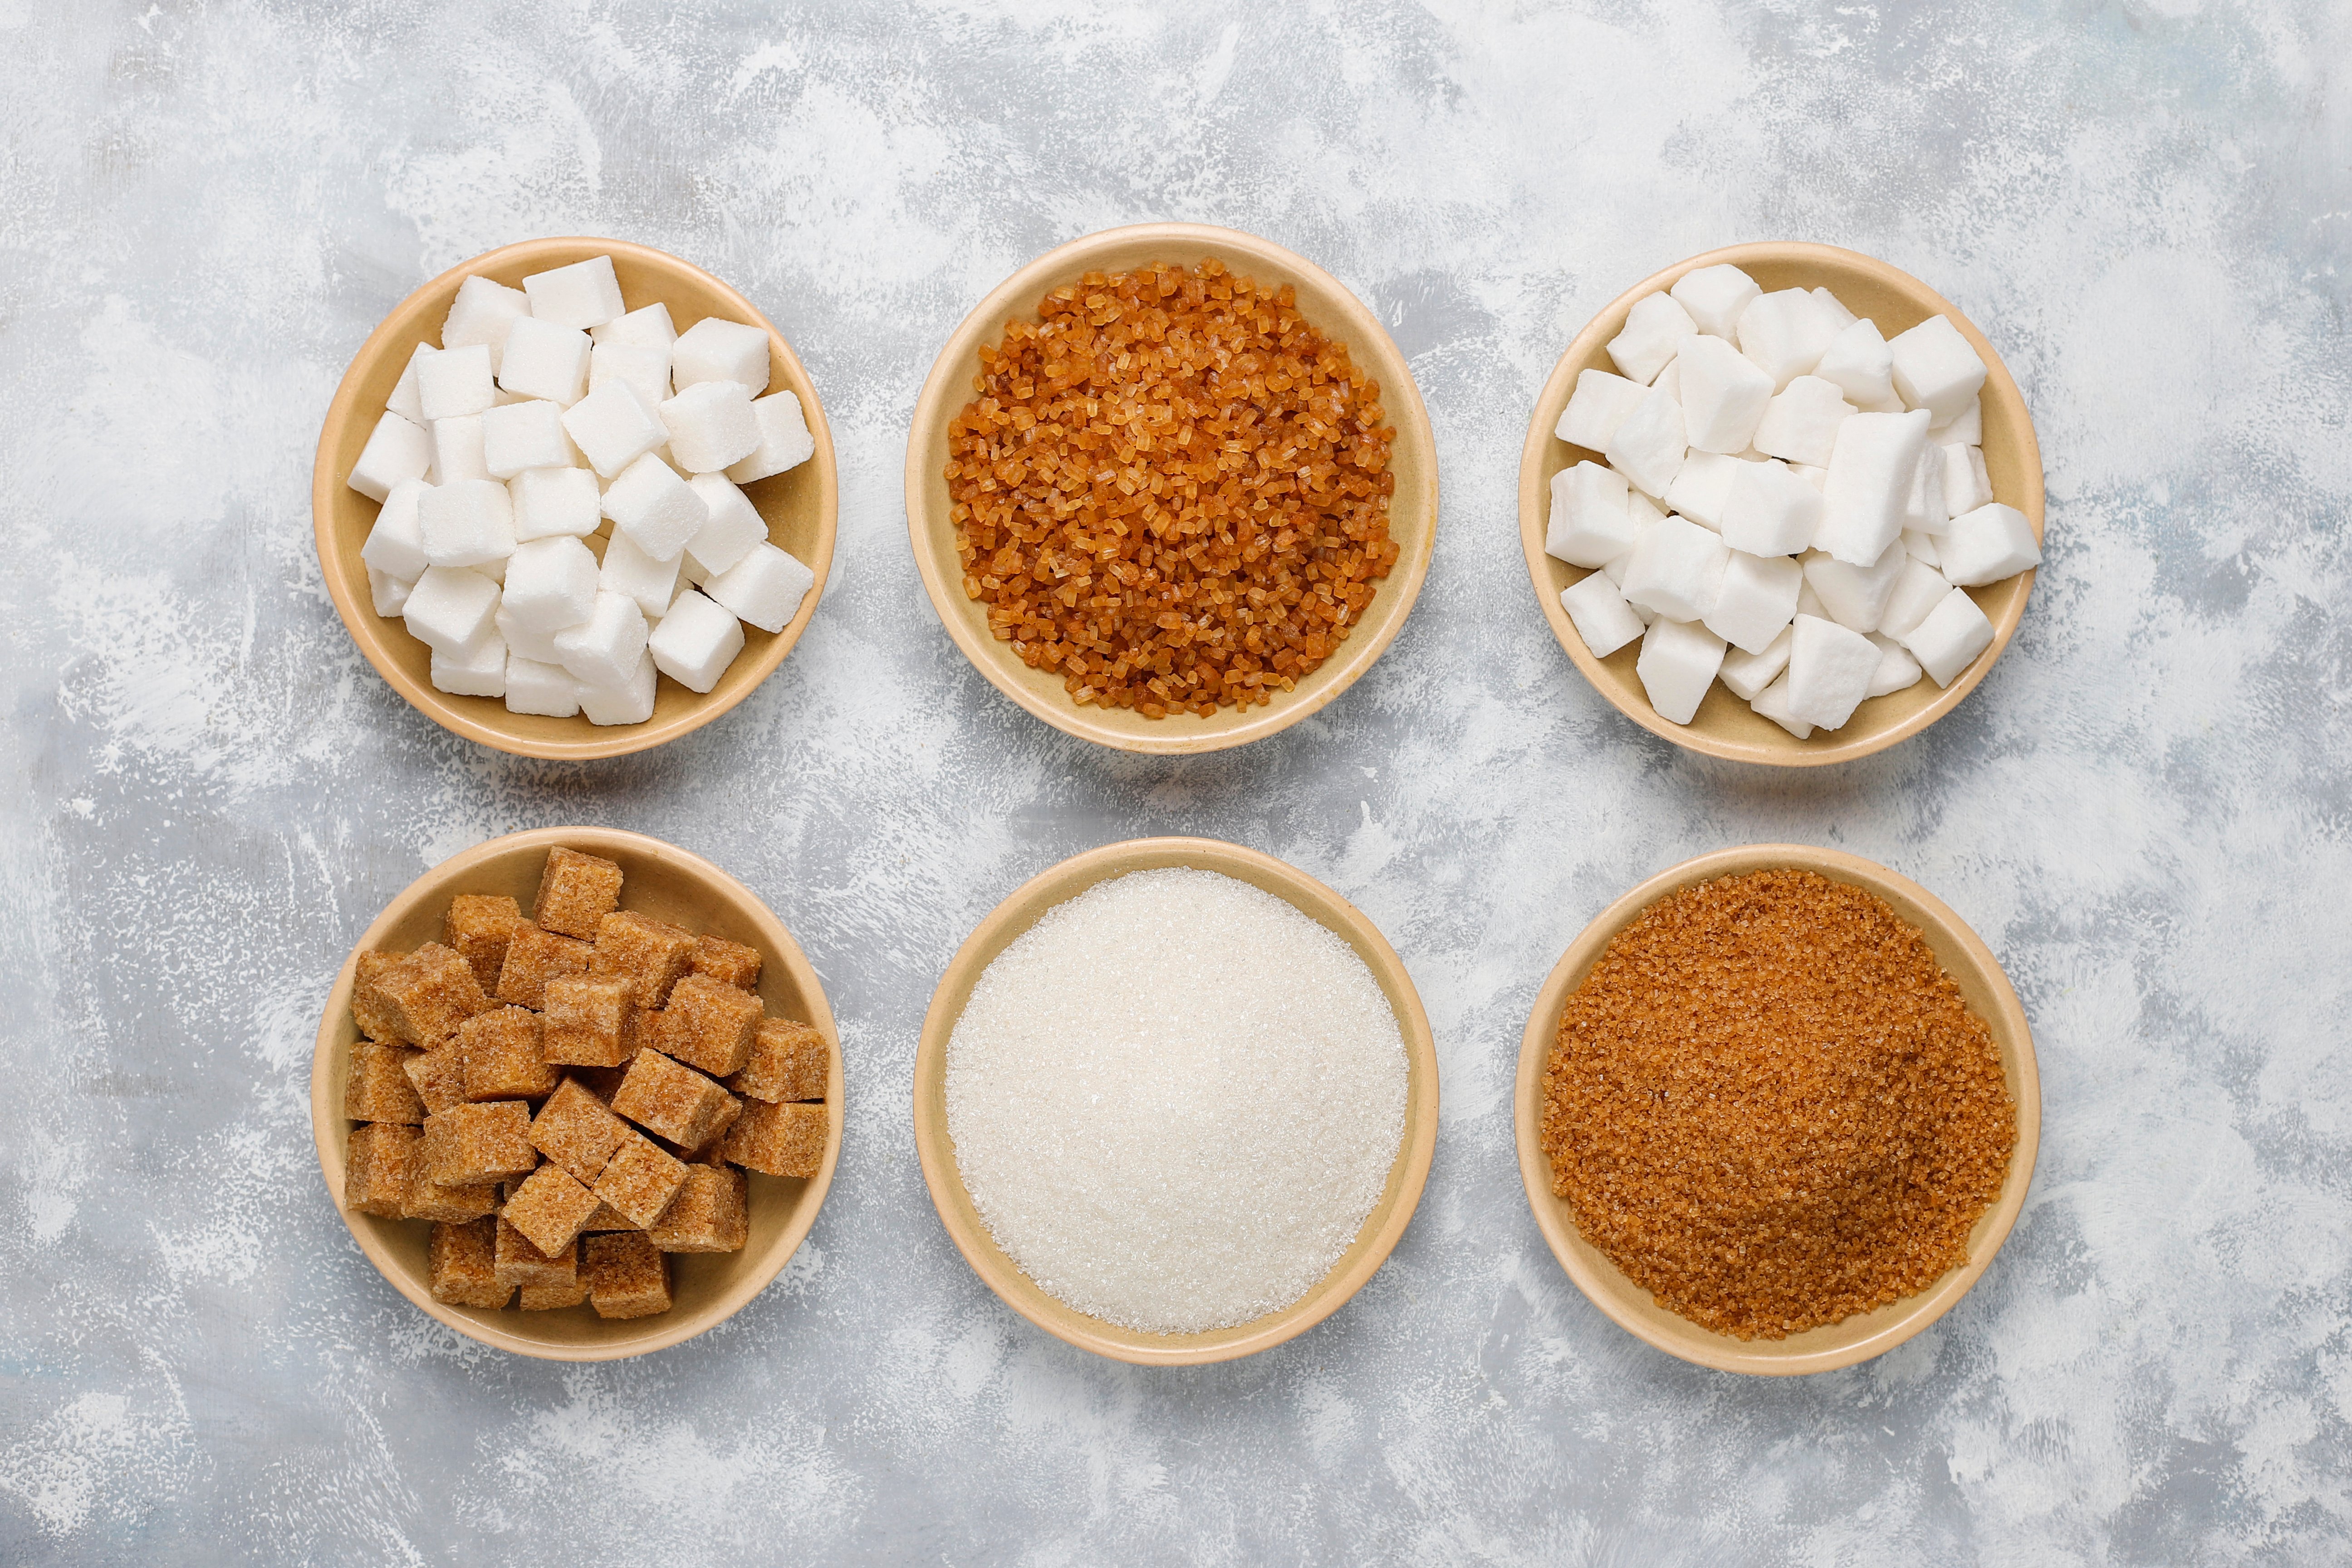 Quels sont les substituts au sucre ?